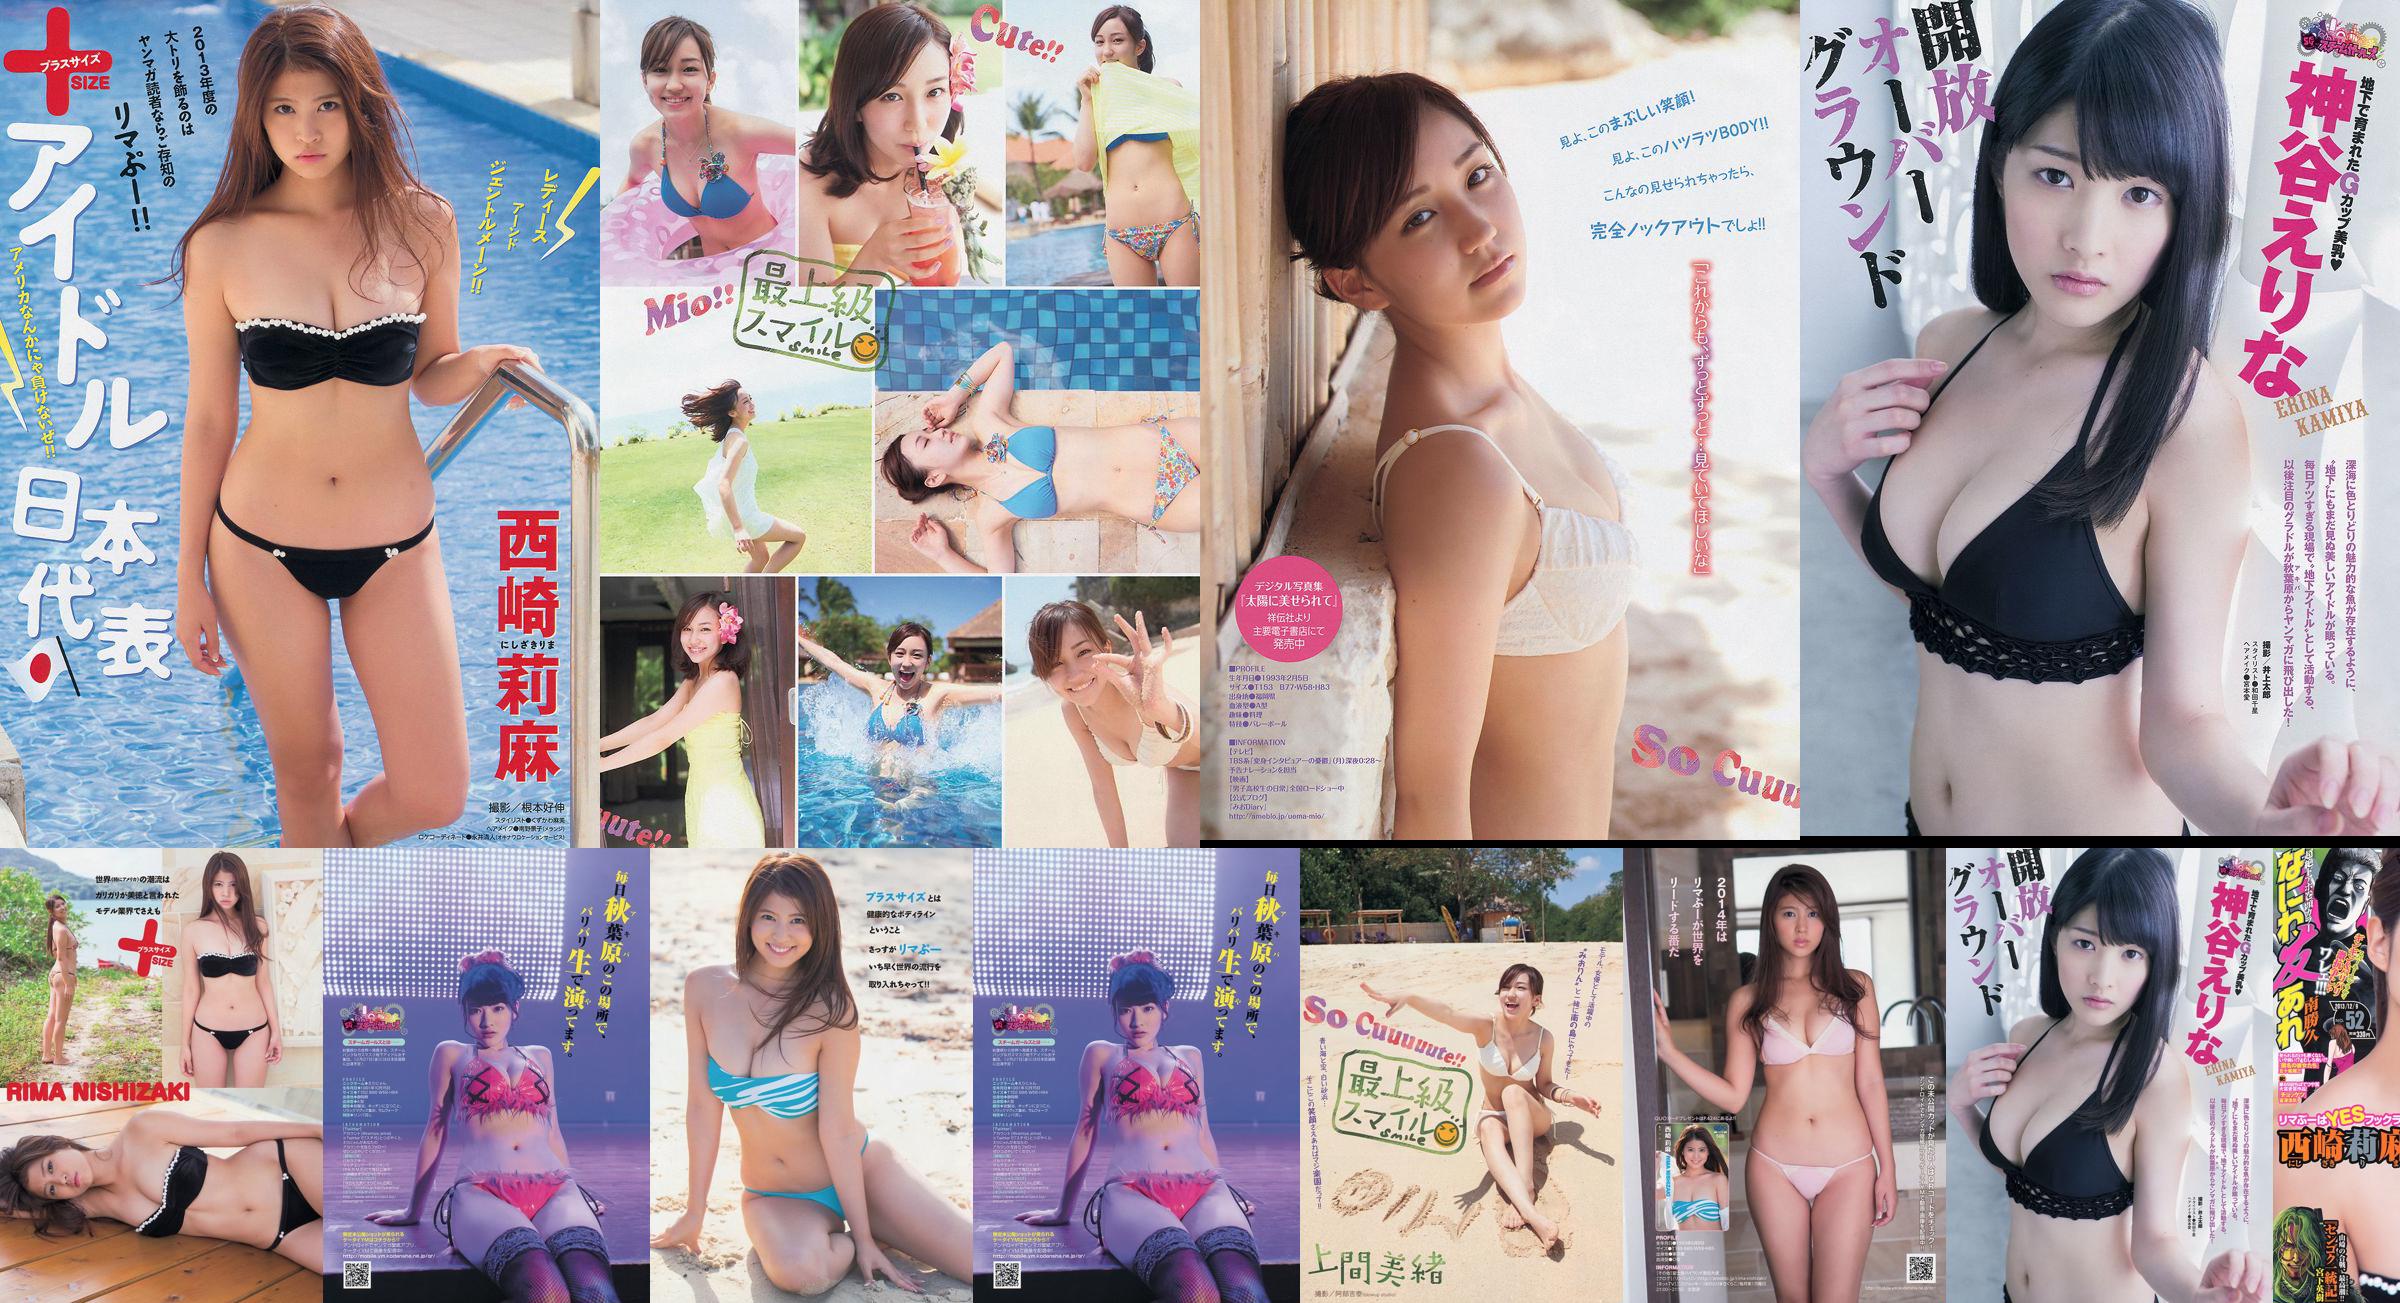 [Revista joven] Rima Nishizaki Mio Uema Erina Kamiya 2013 No.52 Photo Moshi No.8f0e34 Página 1